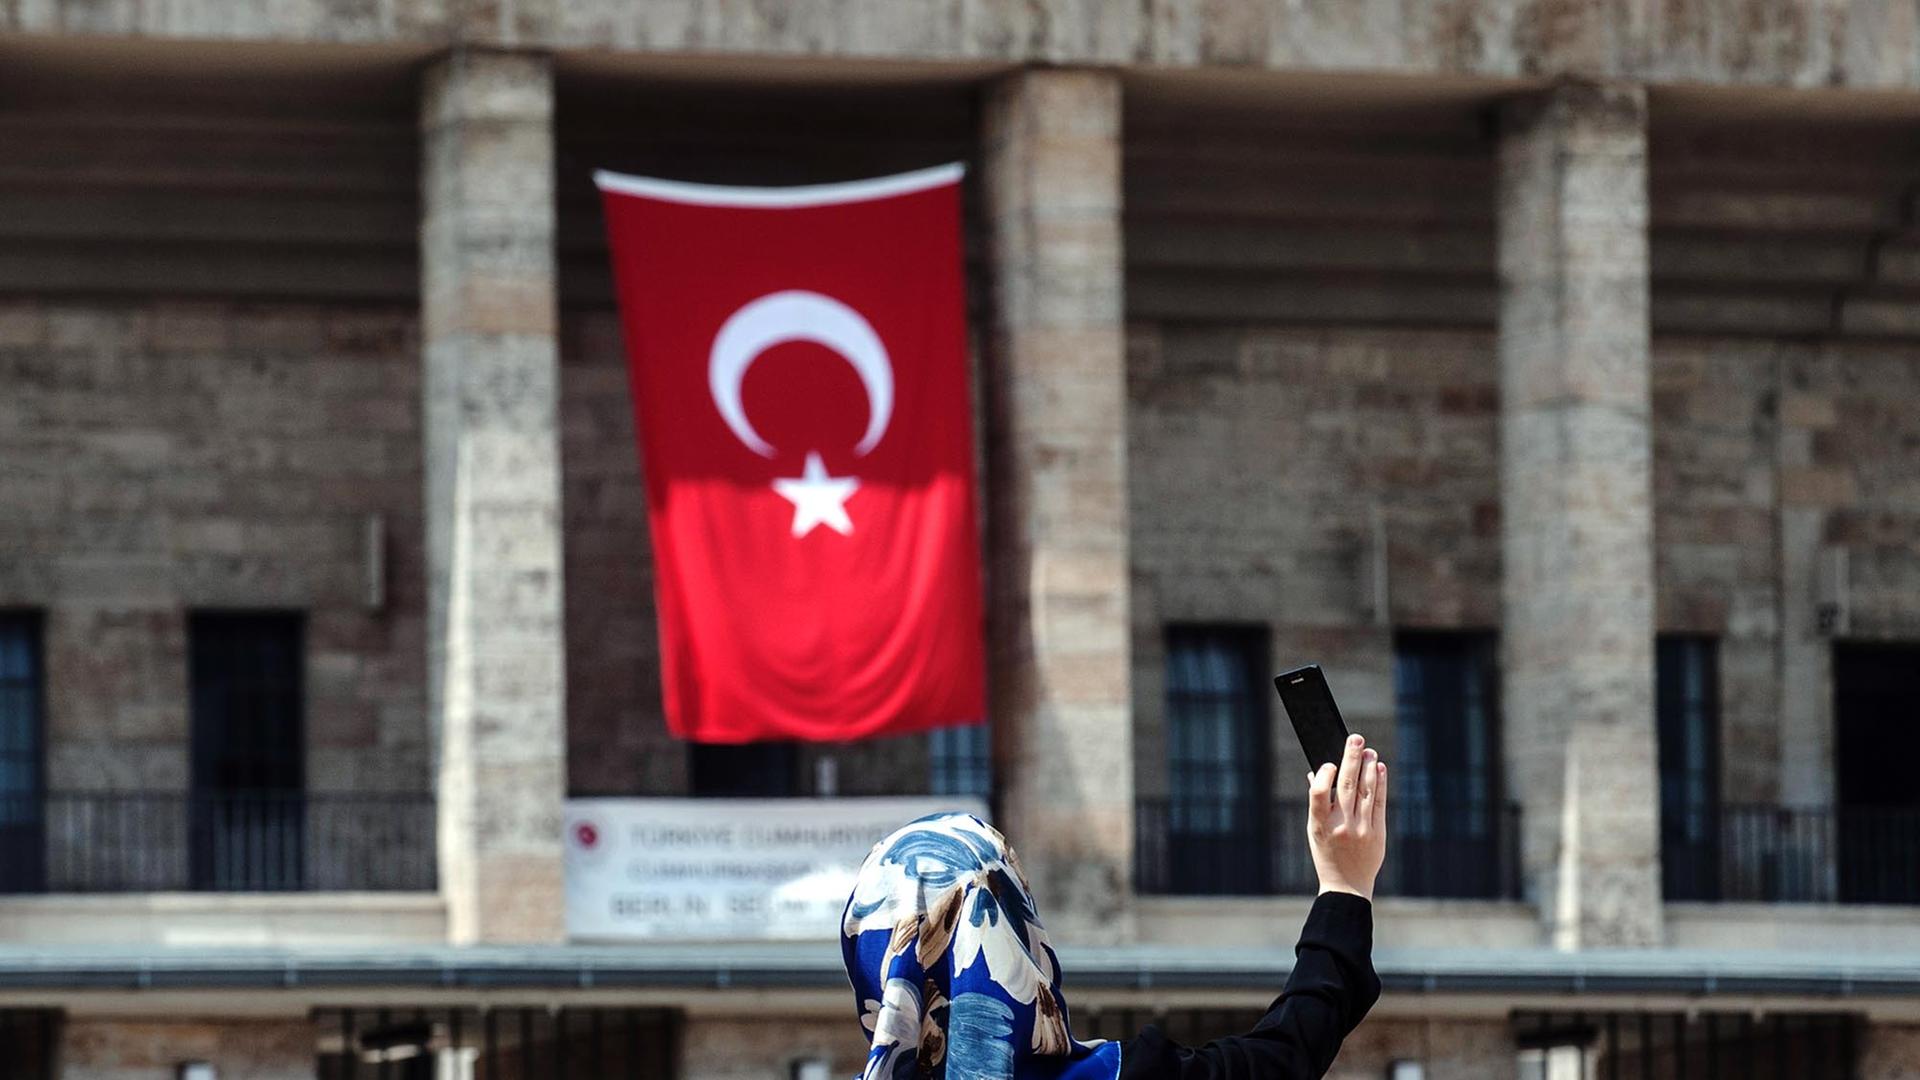 Eine Frau mit Kopftuch fotografiert sich selbst am 03.08.2014 vor dem Olympiastadion in Berlin, an dem eine türkische Fahne hängt. Im Olympiastadion ist ein Wahlzentrum für die türkische Präsidentenwahl in Deutschland. Erstmals können türkische Staatsangehörige in Deutschland an der türkischen Präsidentenwahl teilnehmen.